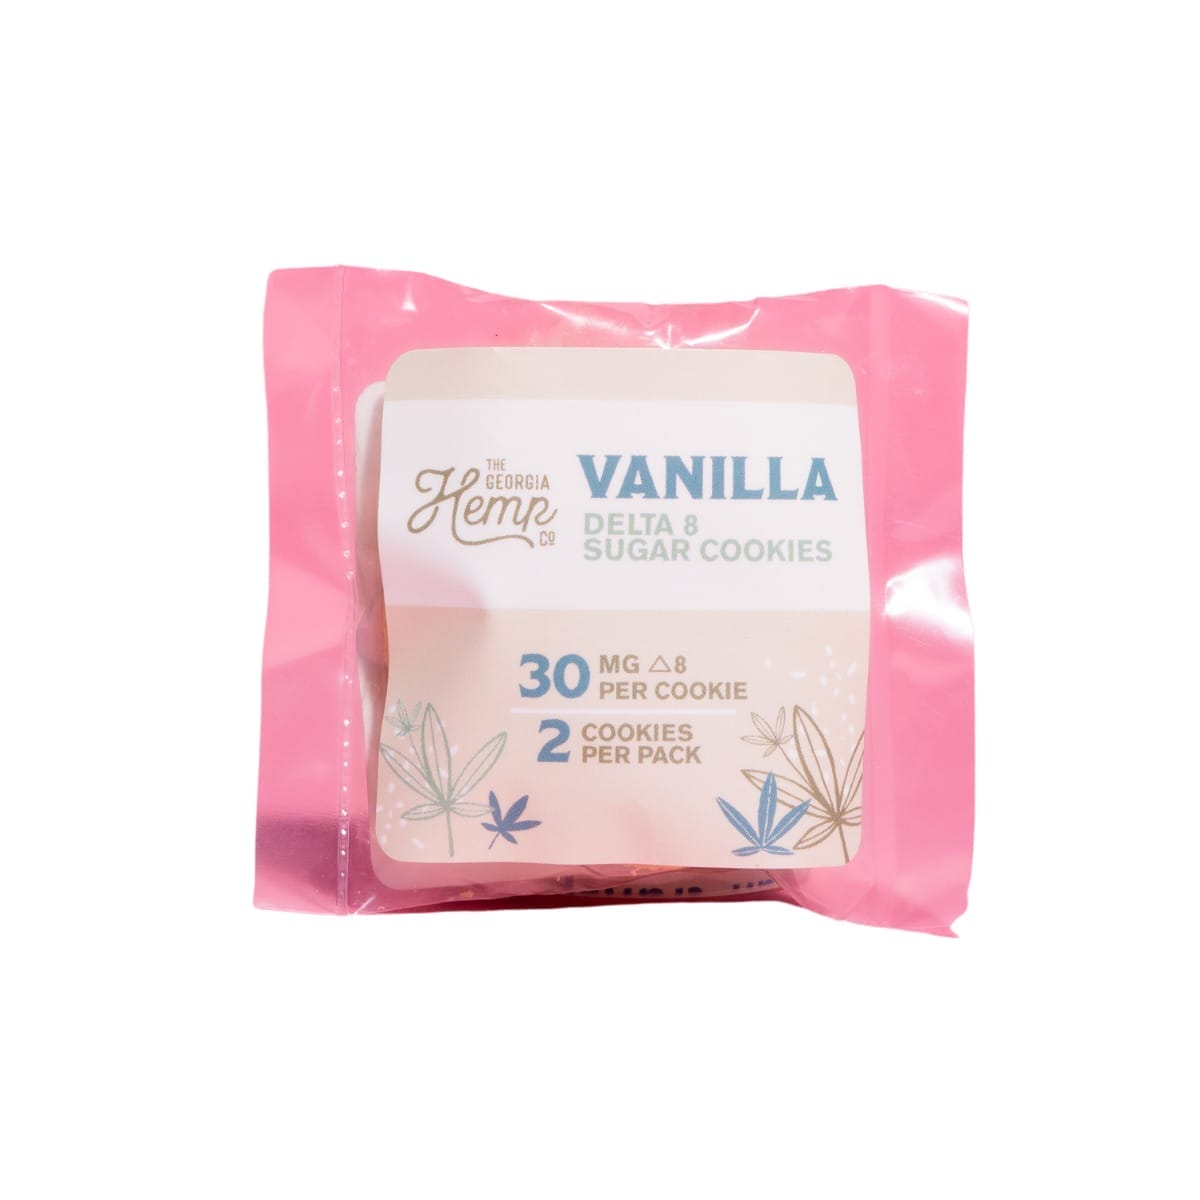 GHC 30mg Delta 8 Vanilla Sugar Cookies